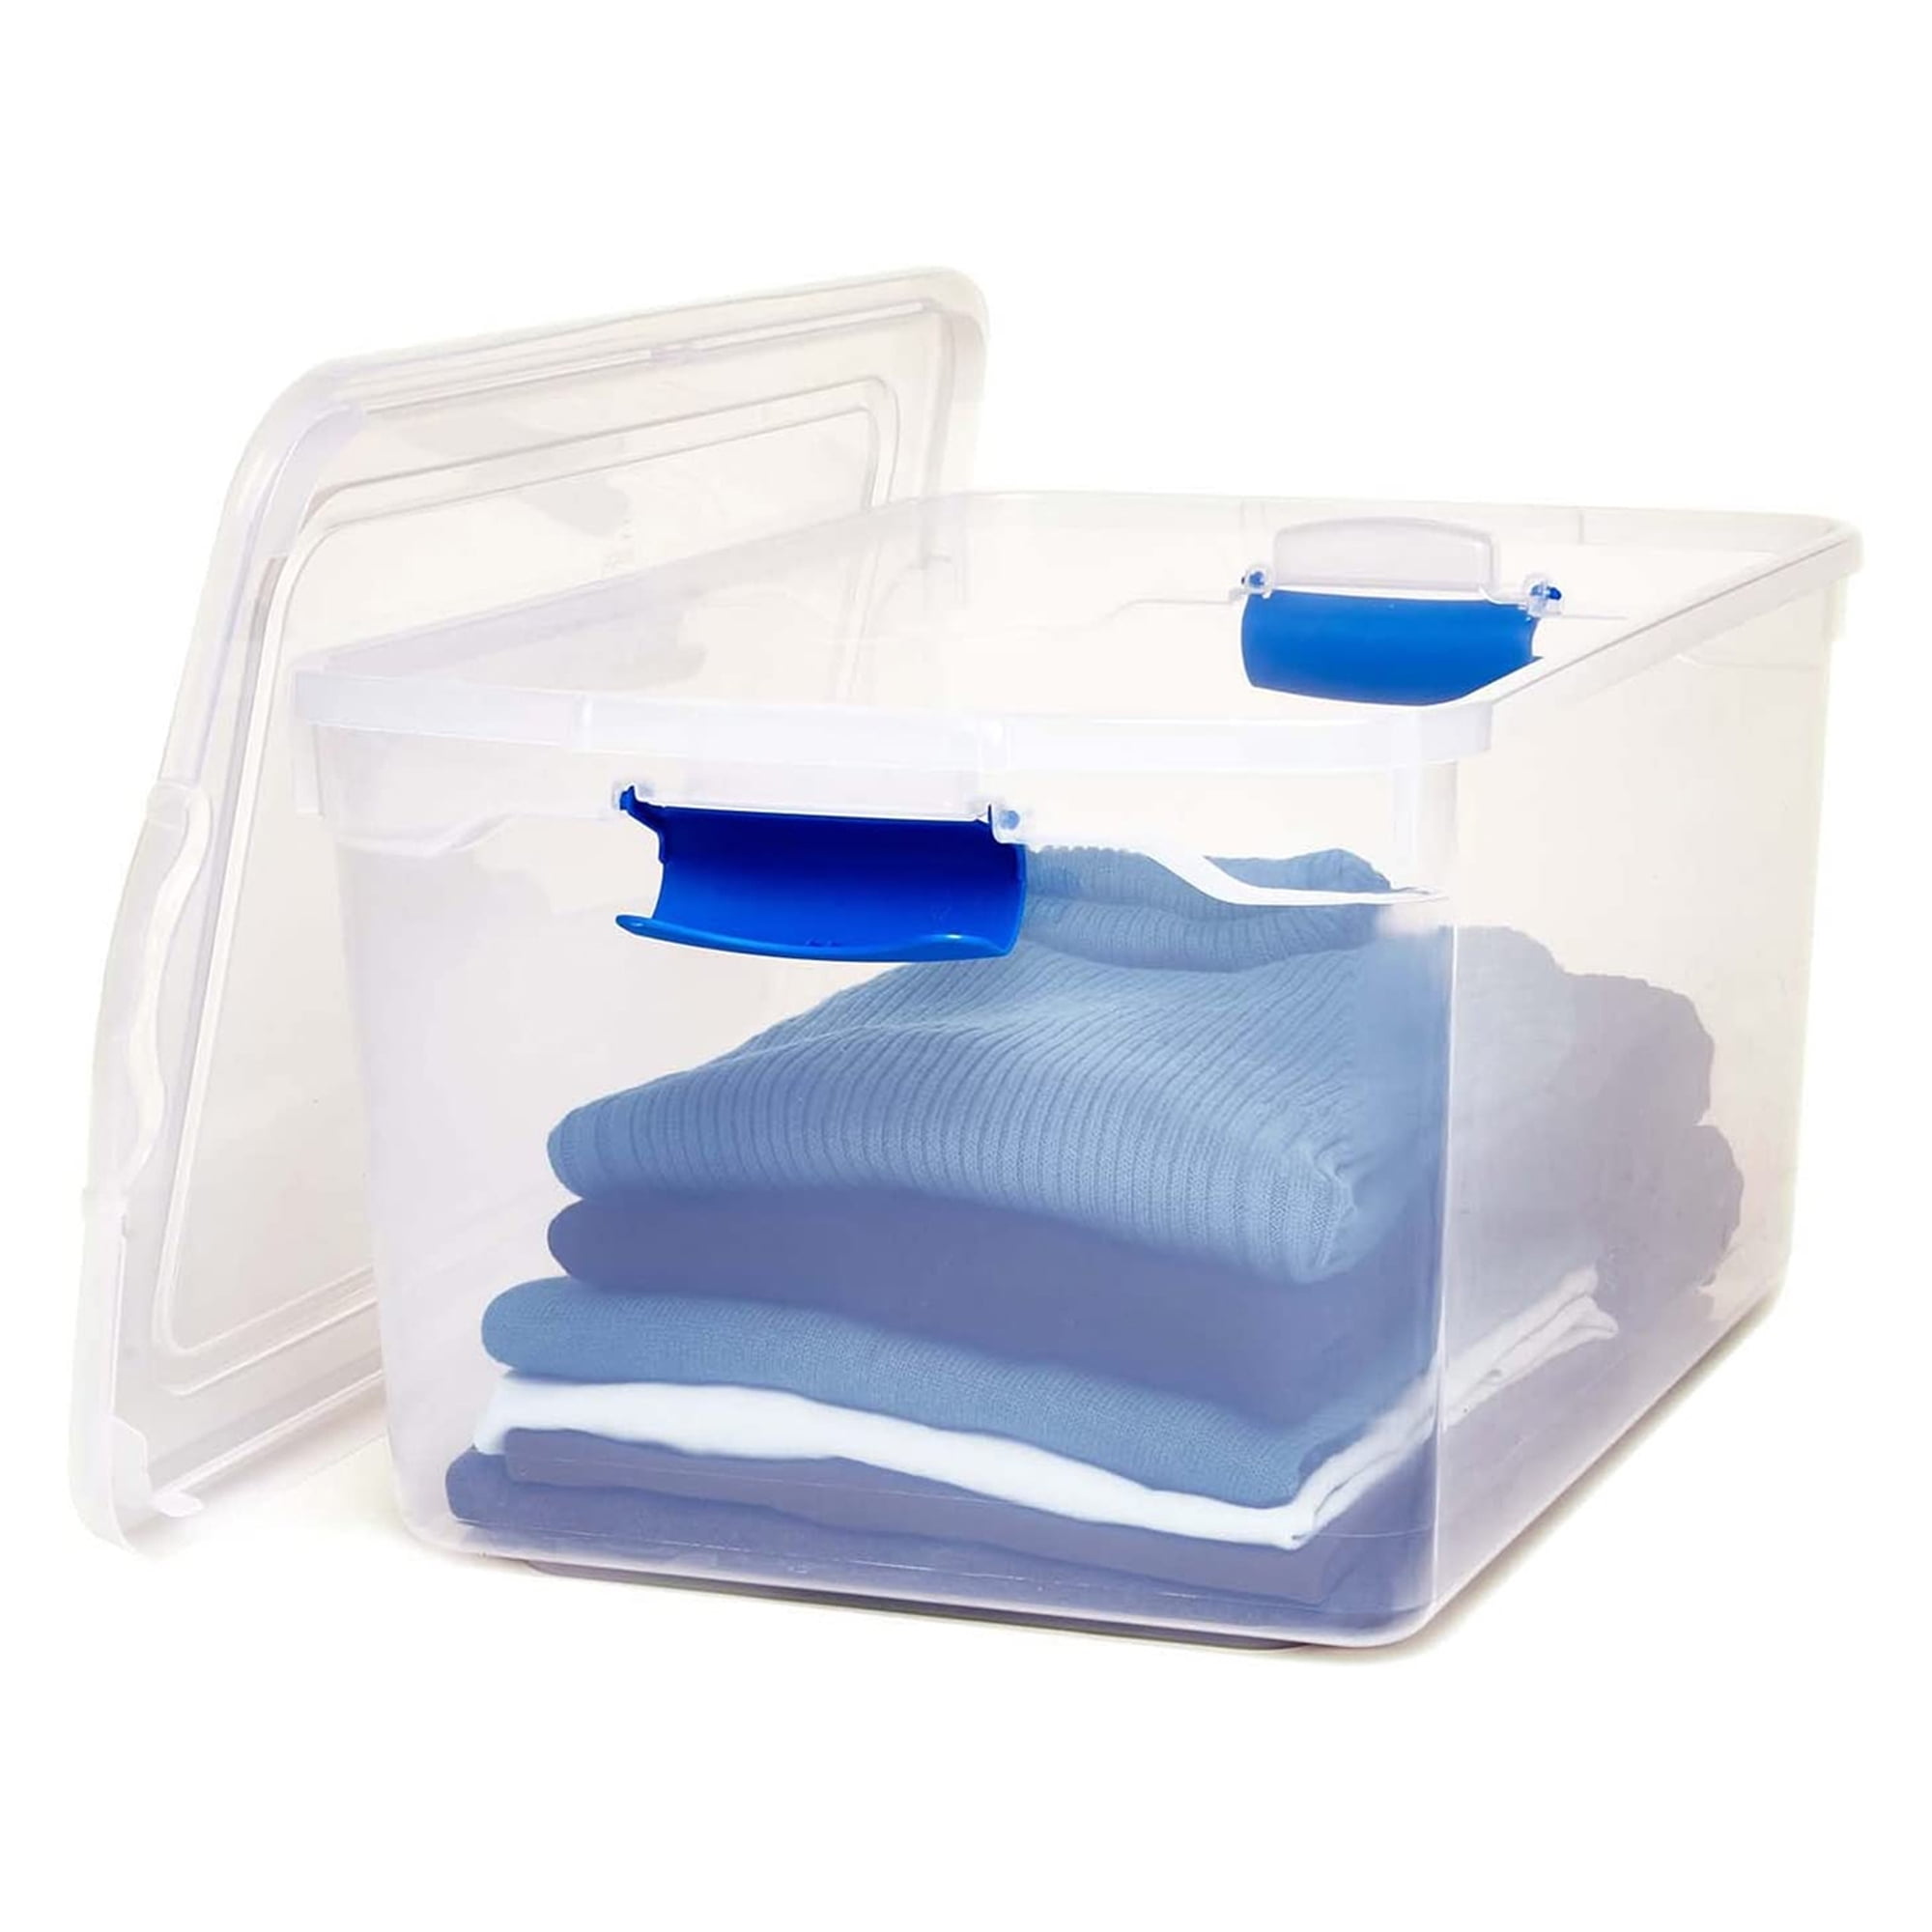 Homz 66-Qt Plastic Storage Boxes, Clear/Blue (Set of 2) - 2